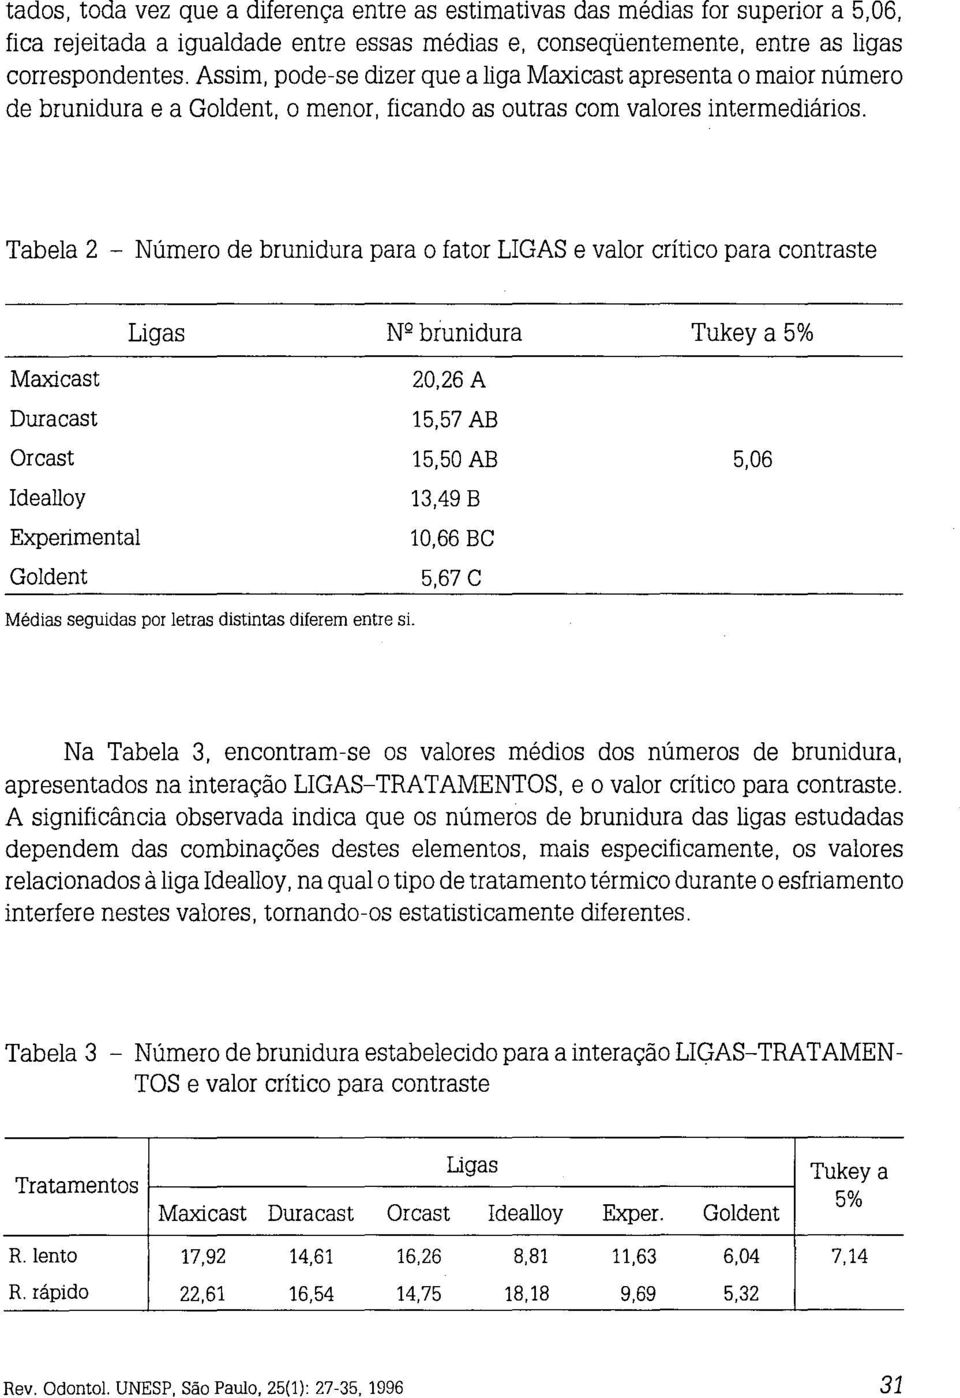 Tabela 2 - Número de brunidura para o fator LIGAS e valor crítico para contraste Ligas Maxicast Duracast Orcast Idealloy Experimental Goldent Nº biunidura 20,26 A 15,57 AB 15,50 AB 13,49 B 10,66 BC